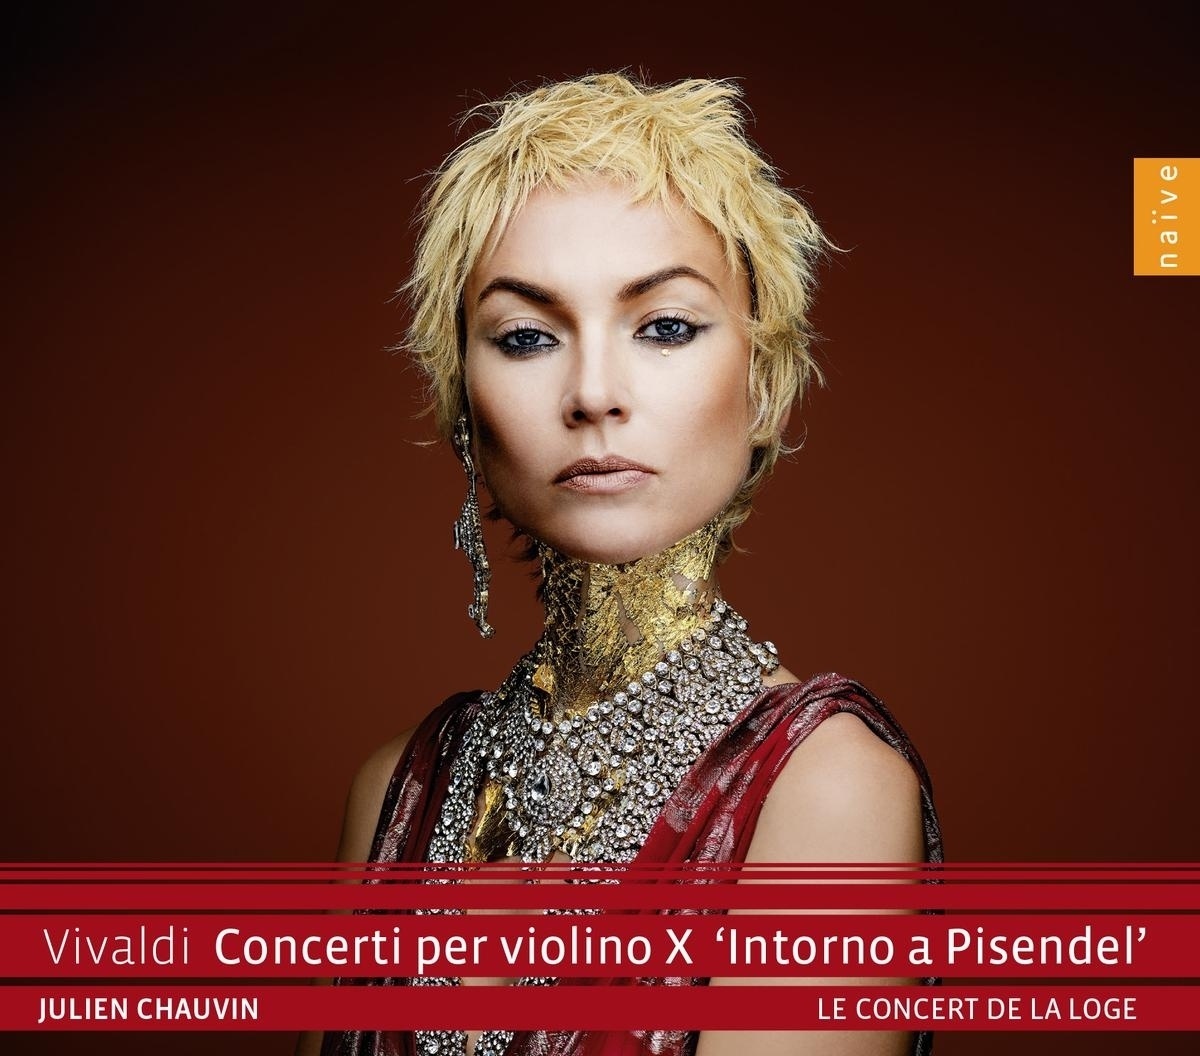 Vivaldi: Concerti Per Violino X "Intorno A Pisende - Julien Chauvin. (CD)